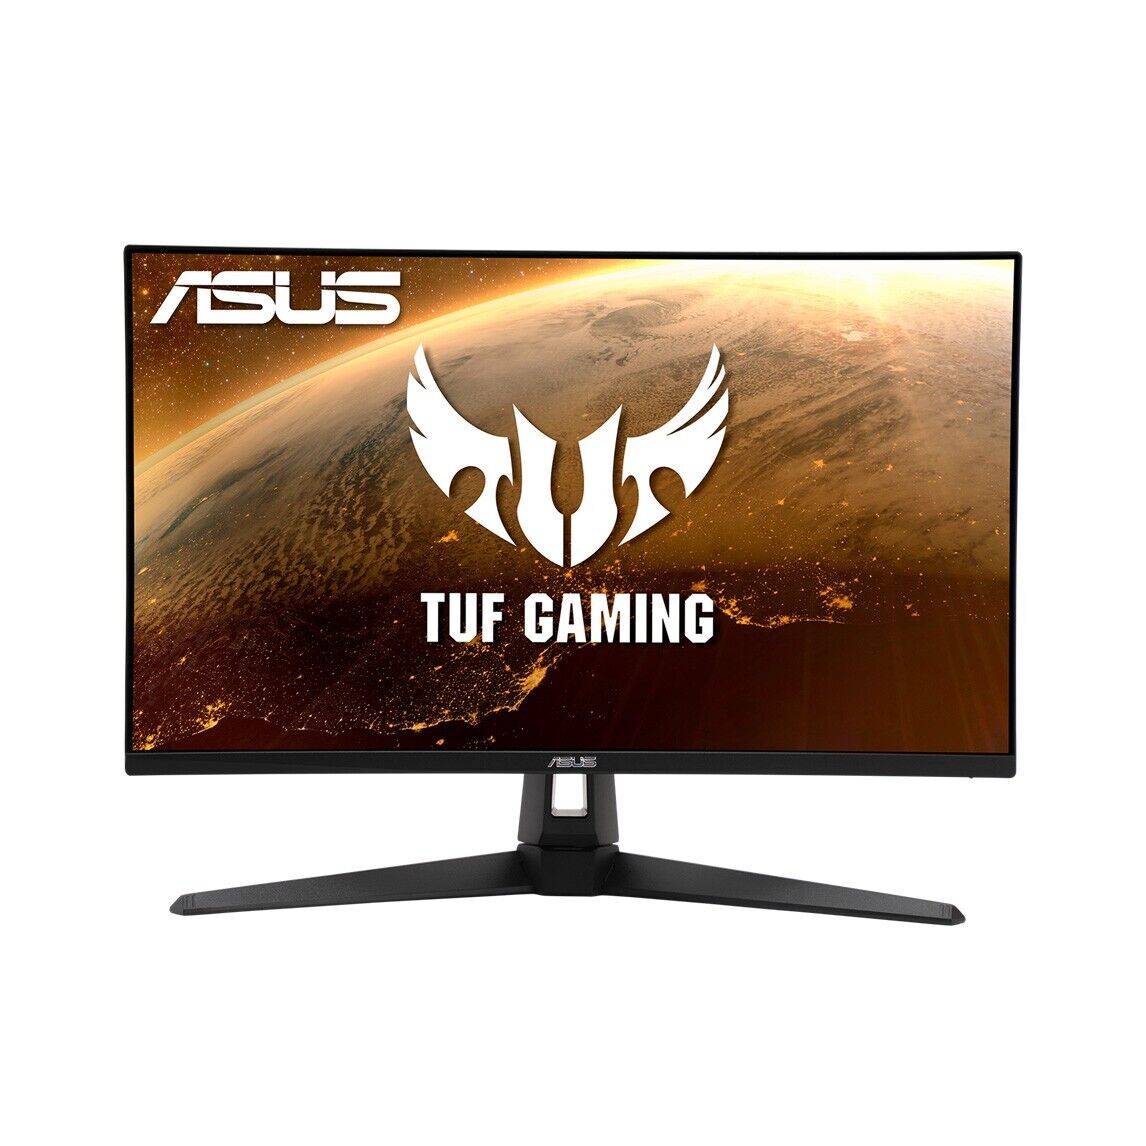 ASUS TUF Gaming VG279Q1A 27